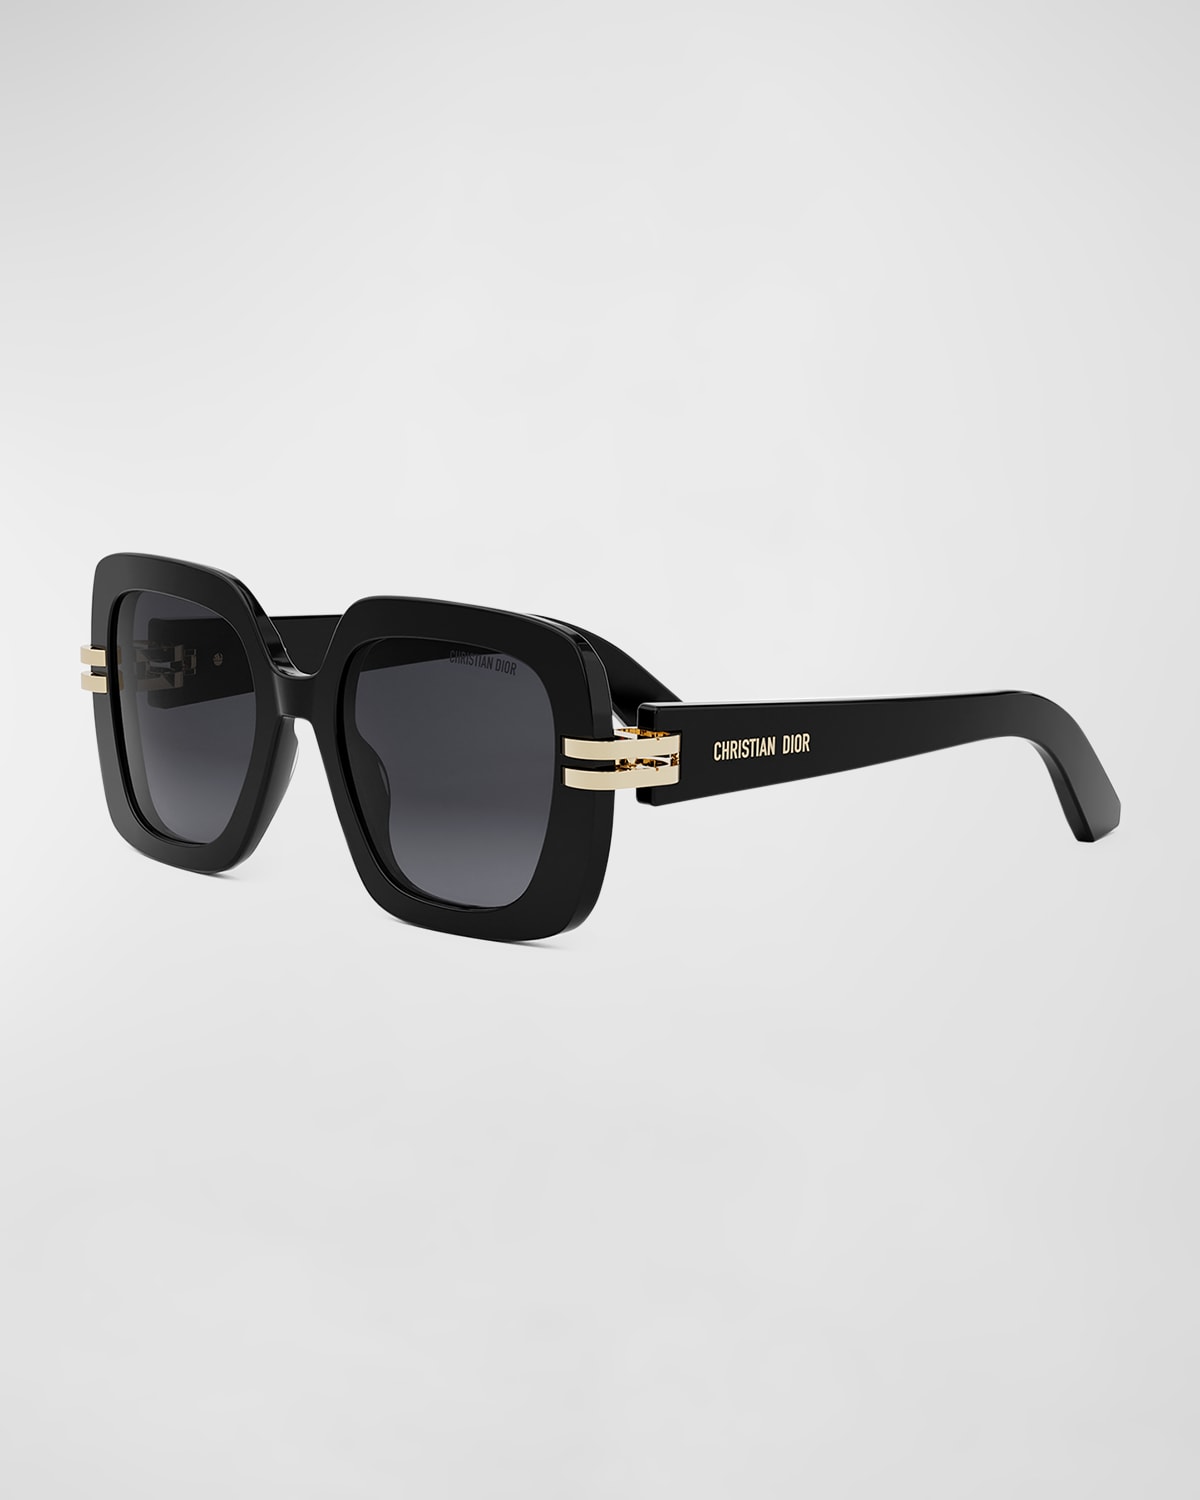 Dior S2i Sunglasses In Black